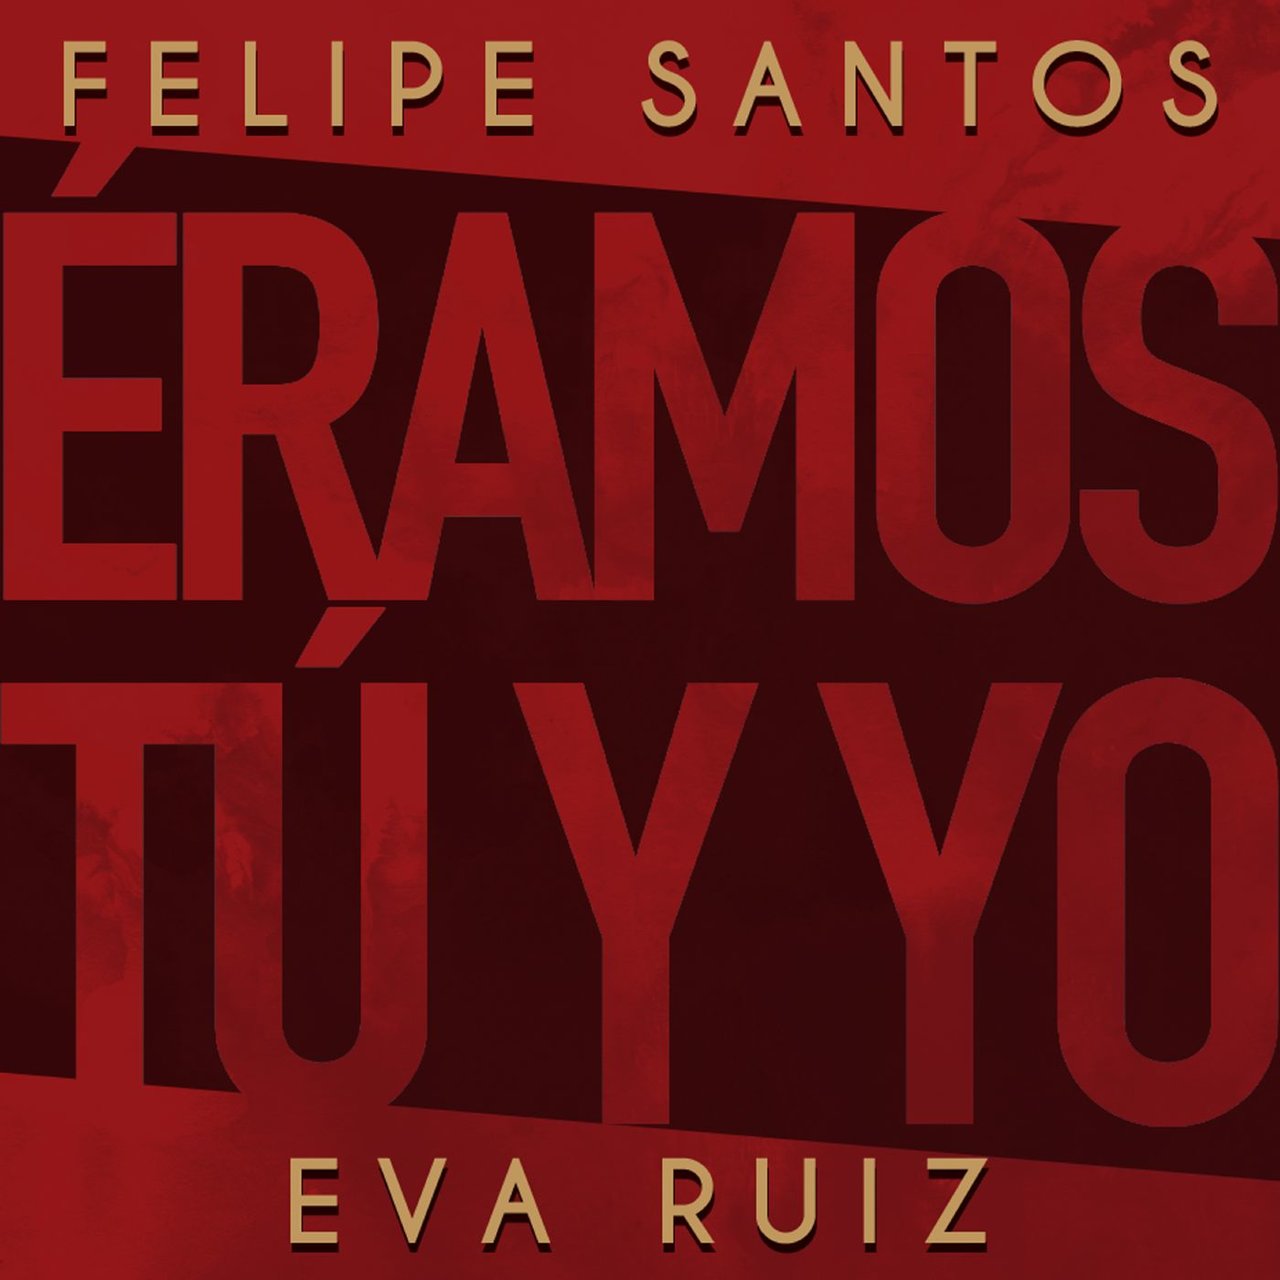 Felipe Santos & Eva Ruiz — Éramos tú y yo cover artwork